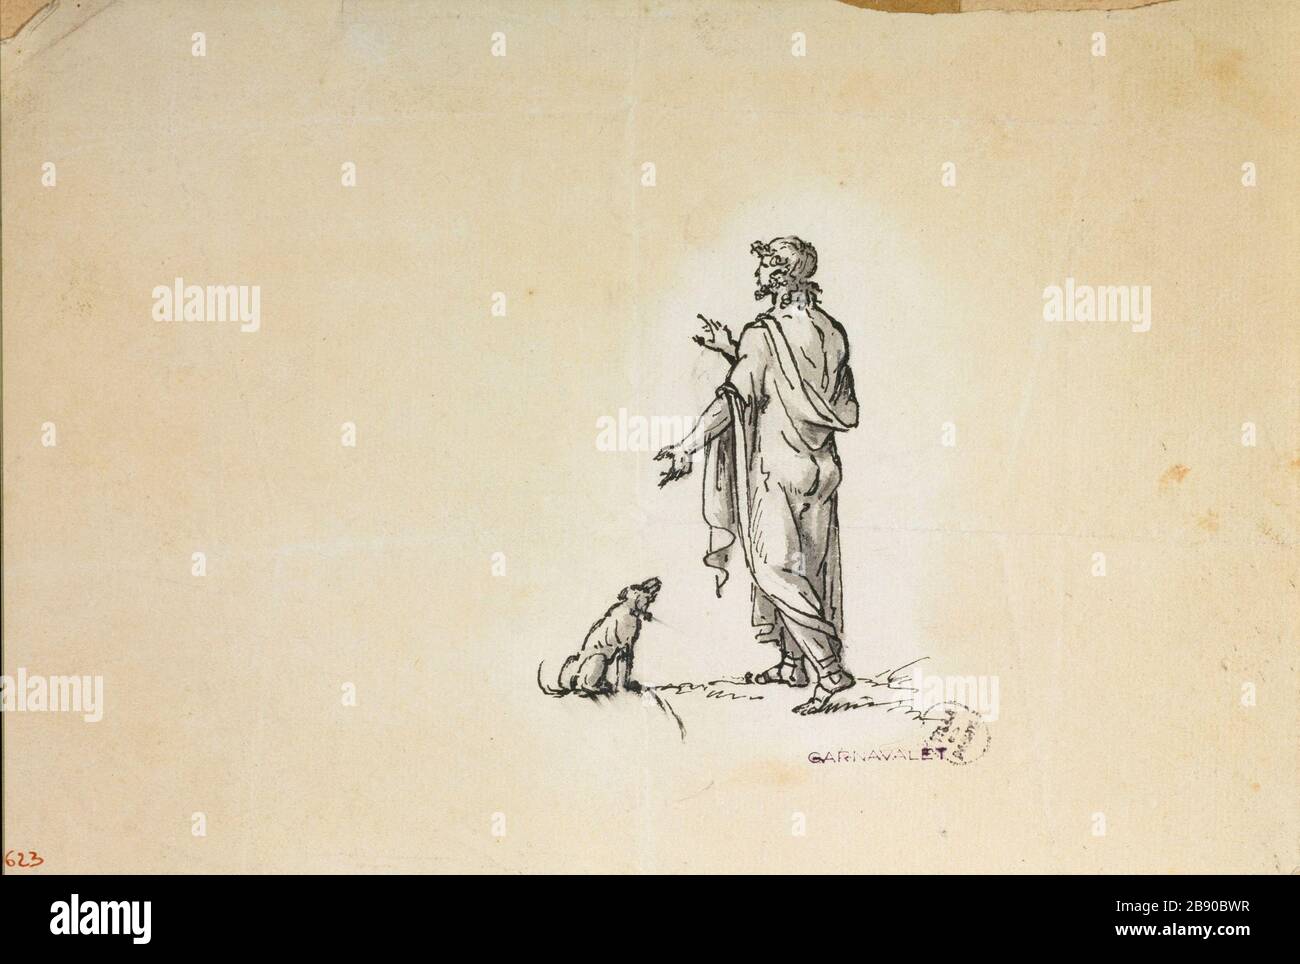 Man and his dog draped Guillaume Boichot (1735-1814). Homme drapé et son chien. Plume, encre de Chine et lavis sur papier crème foncé, 1735-1815. Paris, musée Carnavalet. Stock Photo